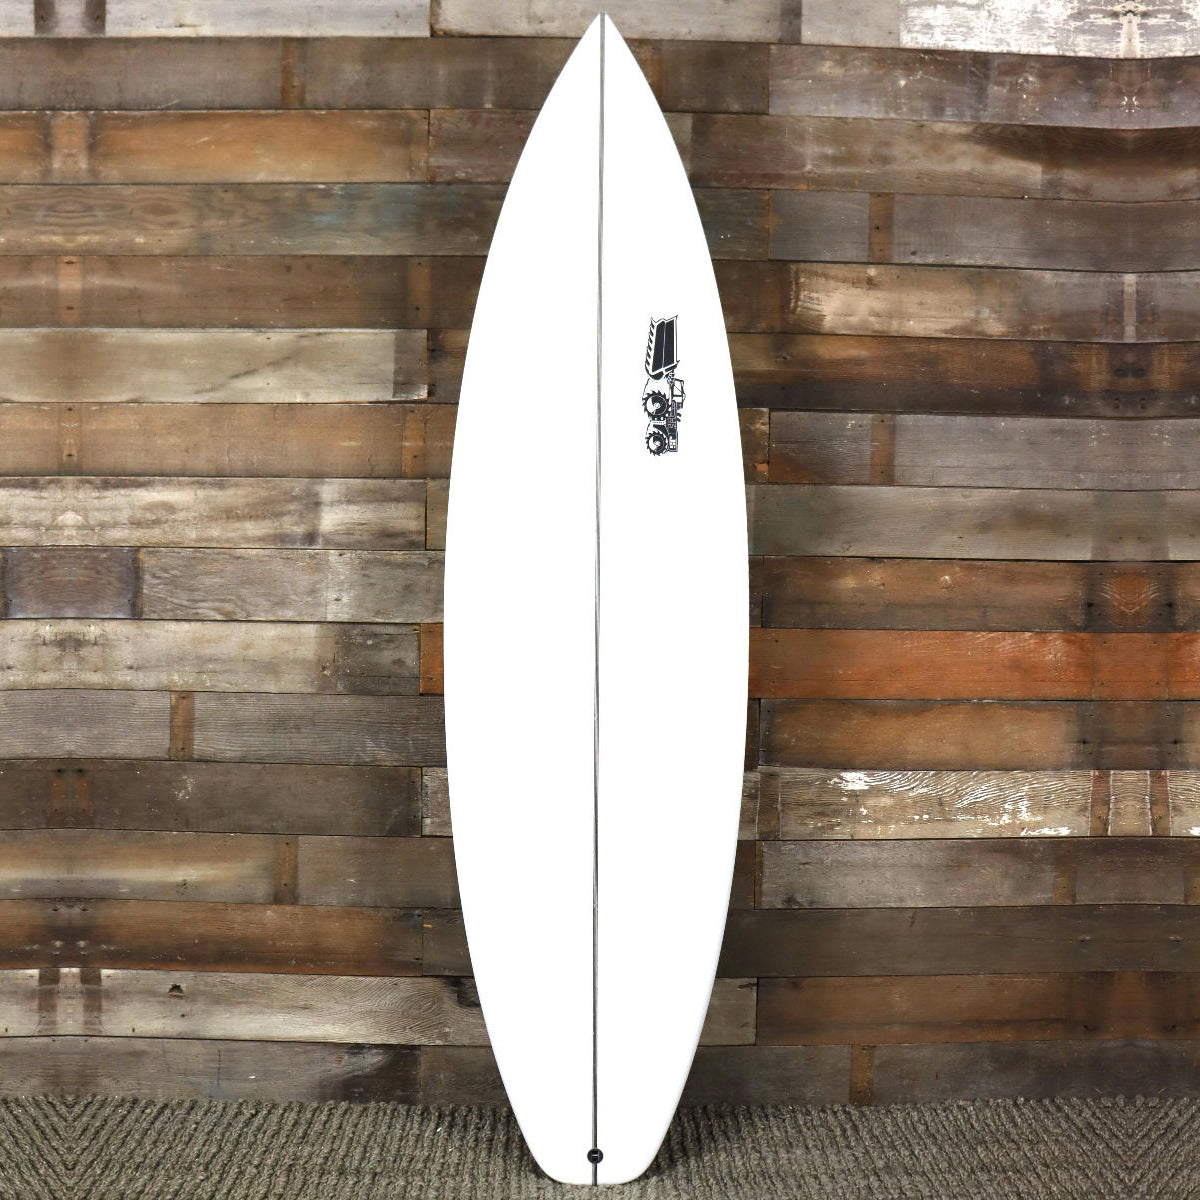 JS Industries Monsta 2020 6'2 x 19 ¼ x 2 ½ Surfboard